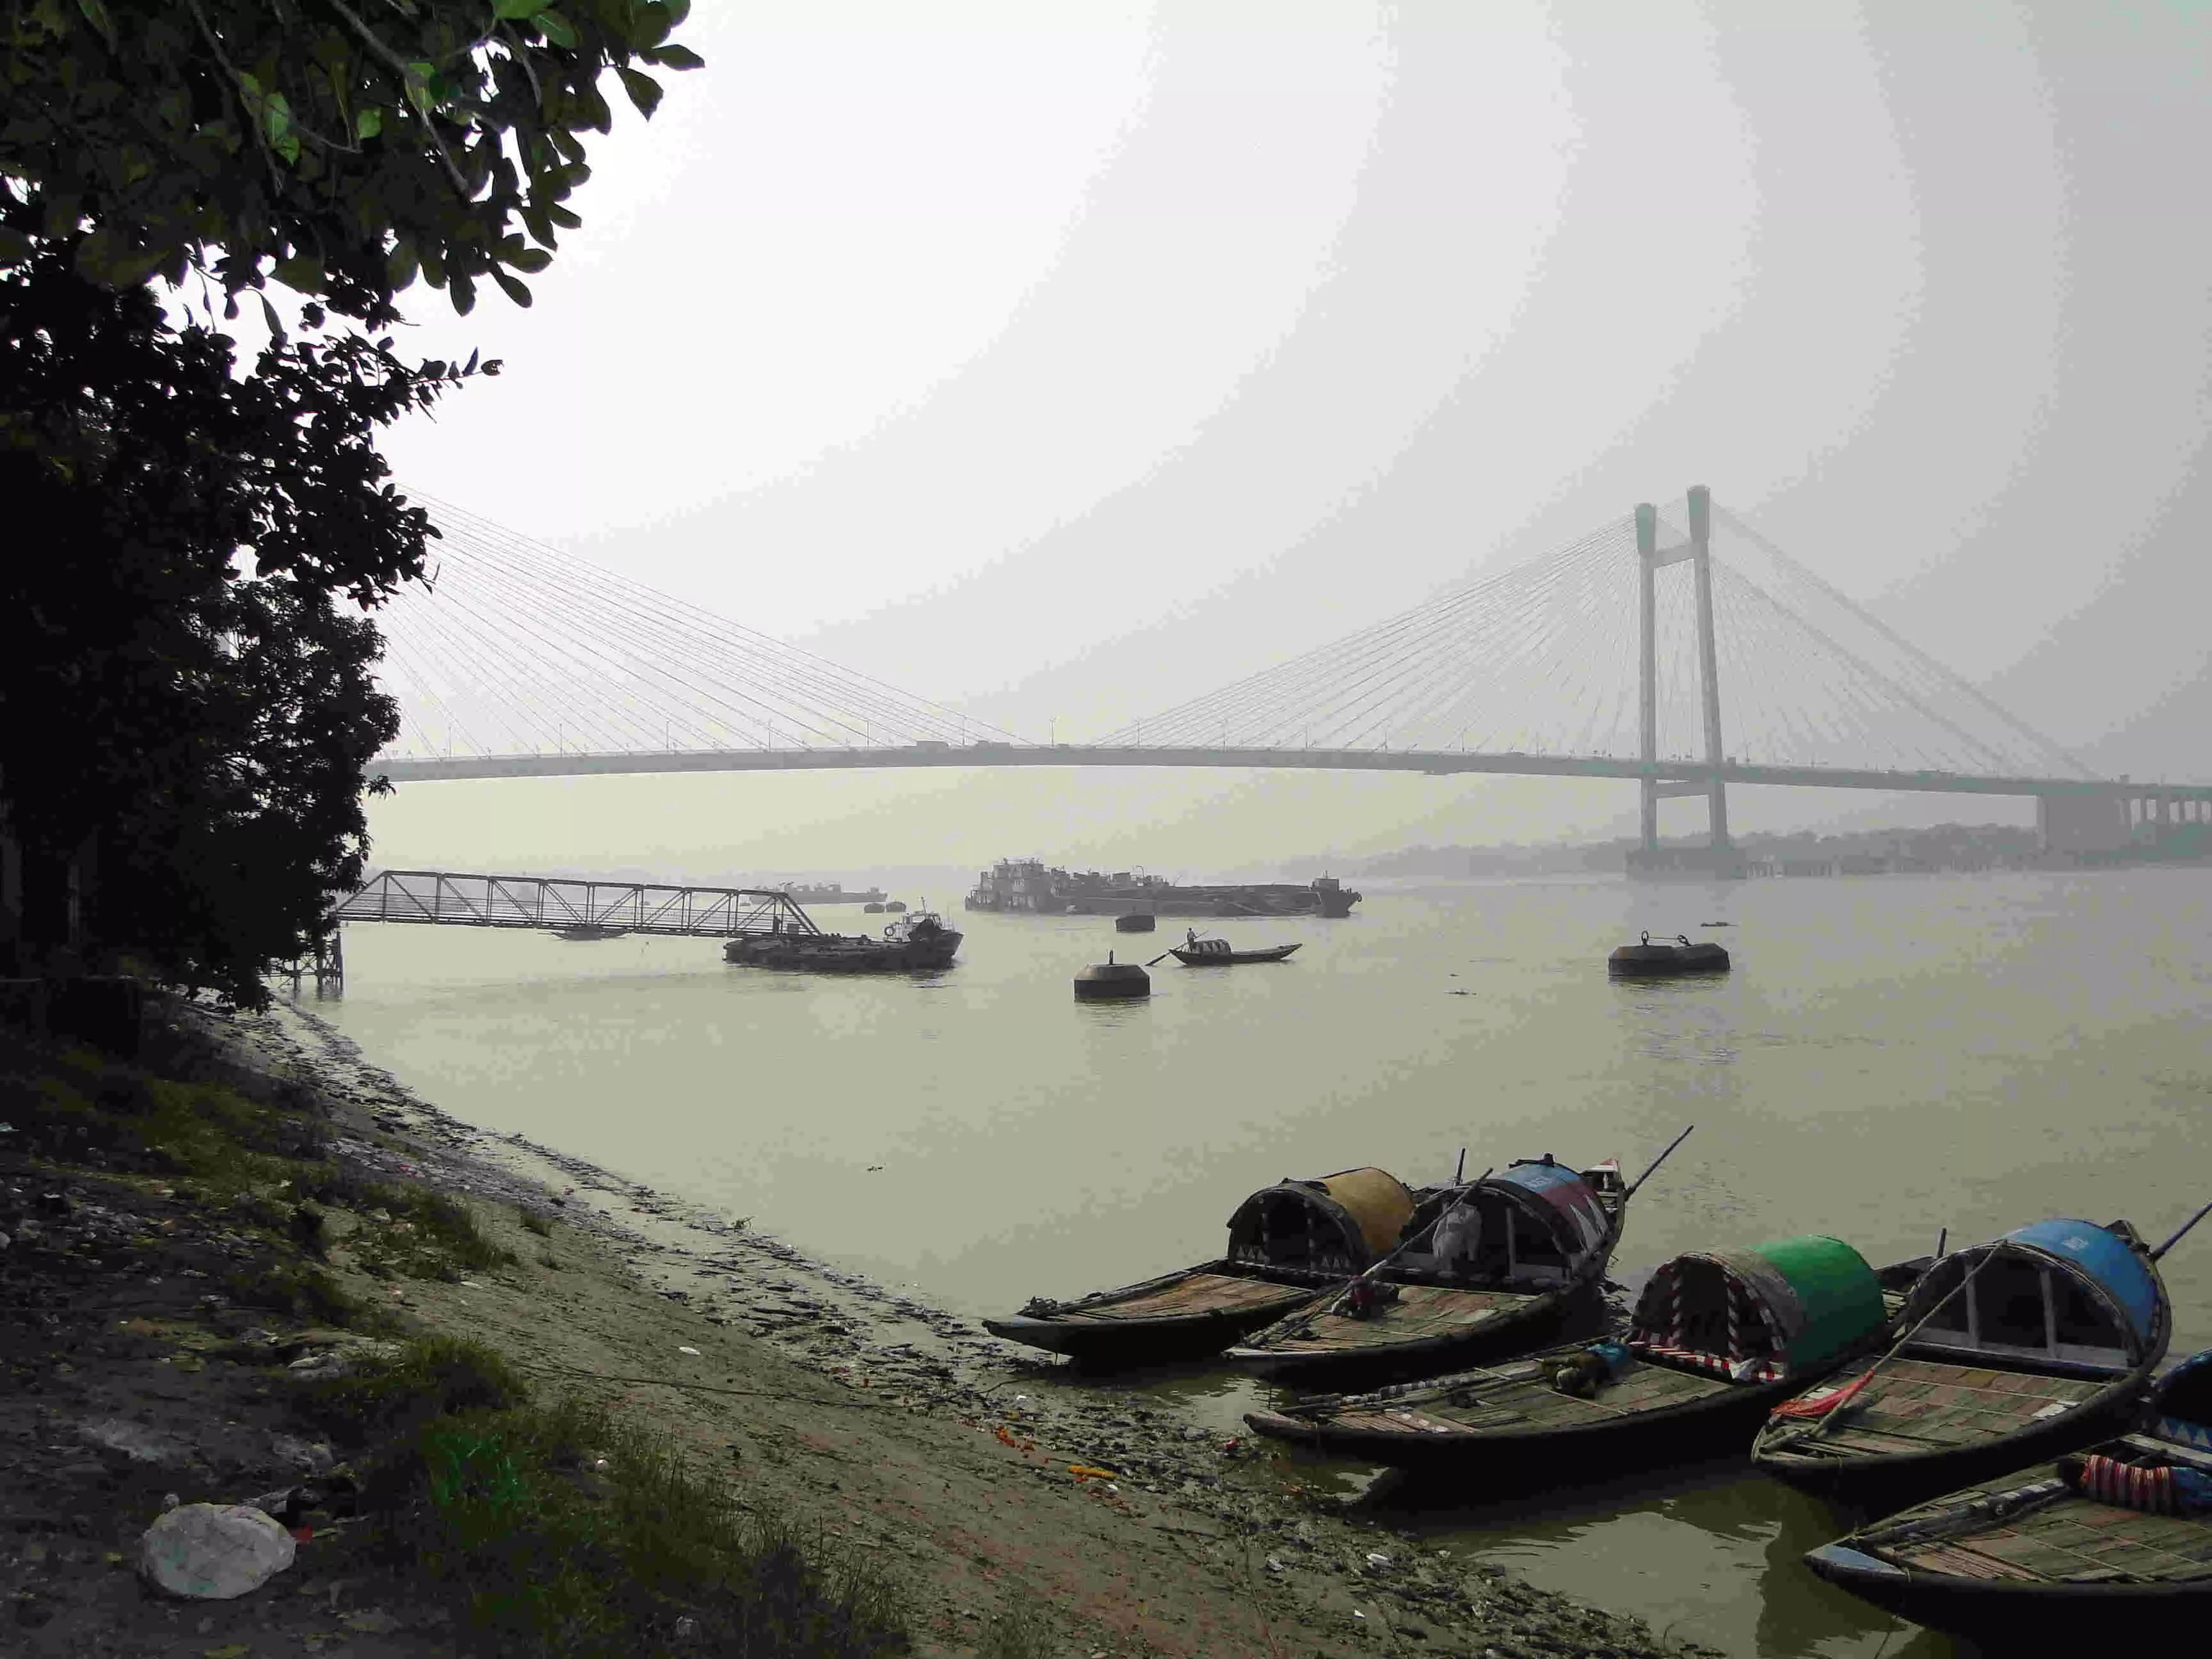 गंगा नदी के निचले हिस्सों में पानी की गुणवत्ता चिंताजनक: अध्ययन